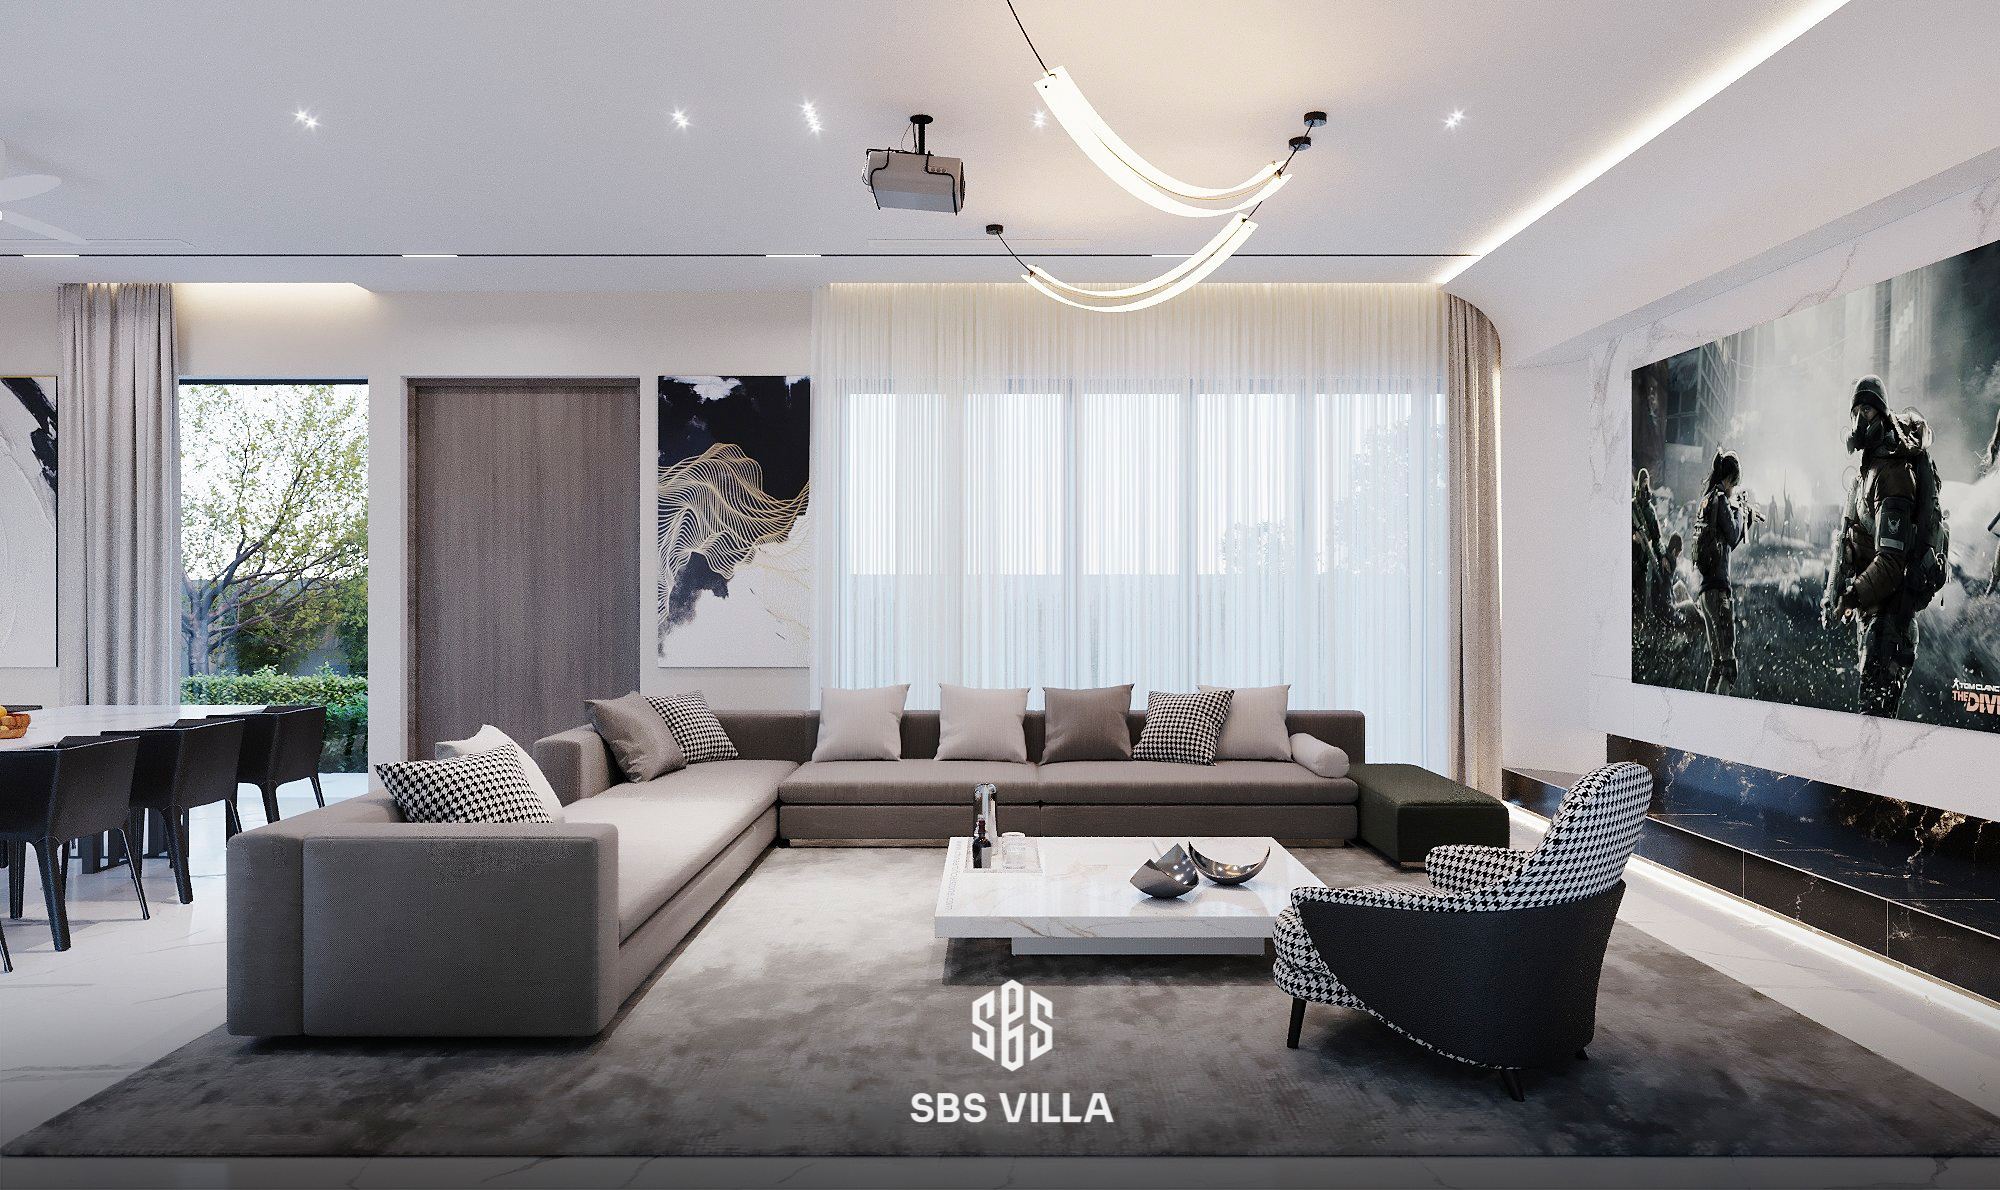 Thiết kế phòng khách mang phong cách hiện đại, sự giao thoa hoàn hảo của các đường nét phóng khoáng, tự do kết hợp cùng hệ thống nội thất, đồ dùng trang trí mang sắc màu giản đơn nhưng đầy tính nghệ thuật, độc đáo và phá cách được phô diễn qua chất liệu, kiểu dáng và từng nét vẽ